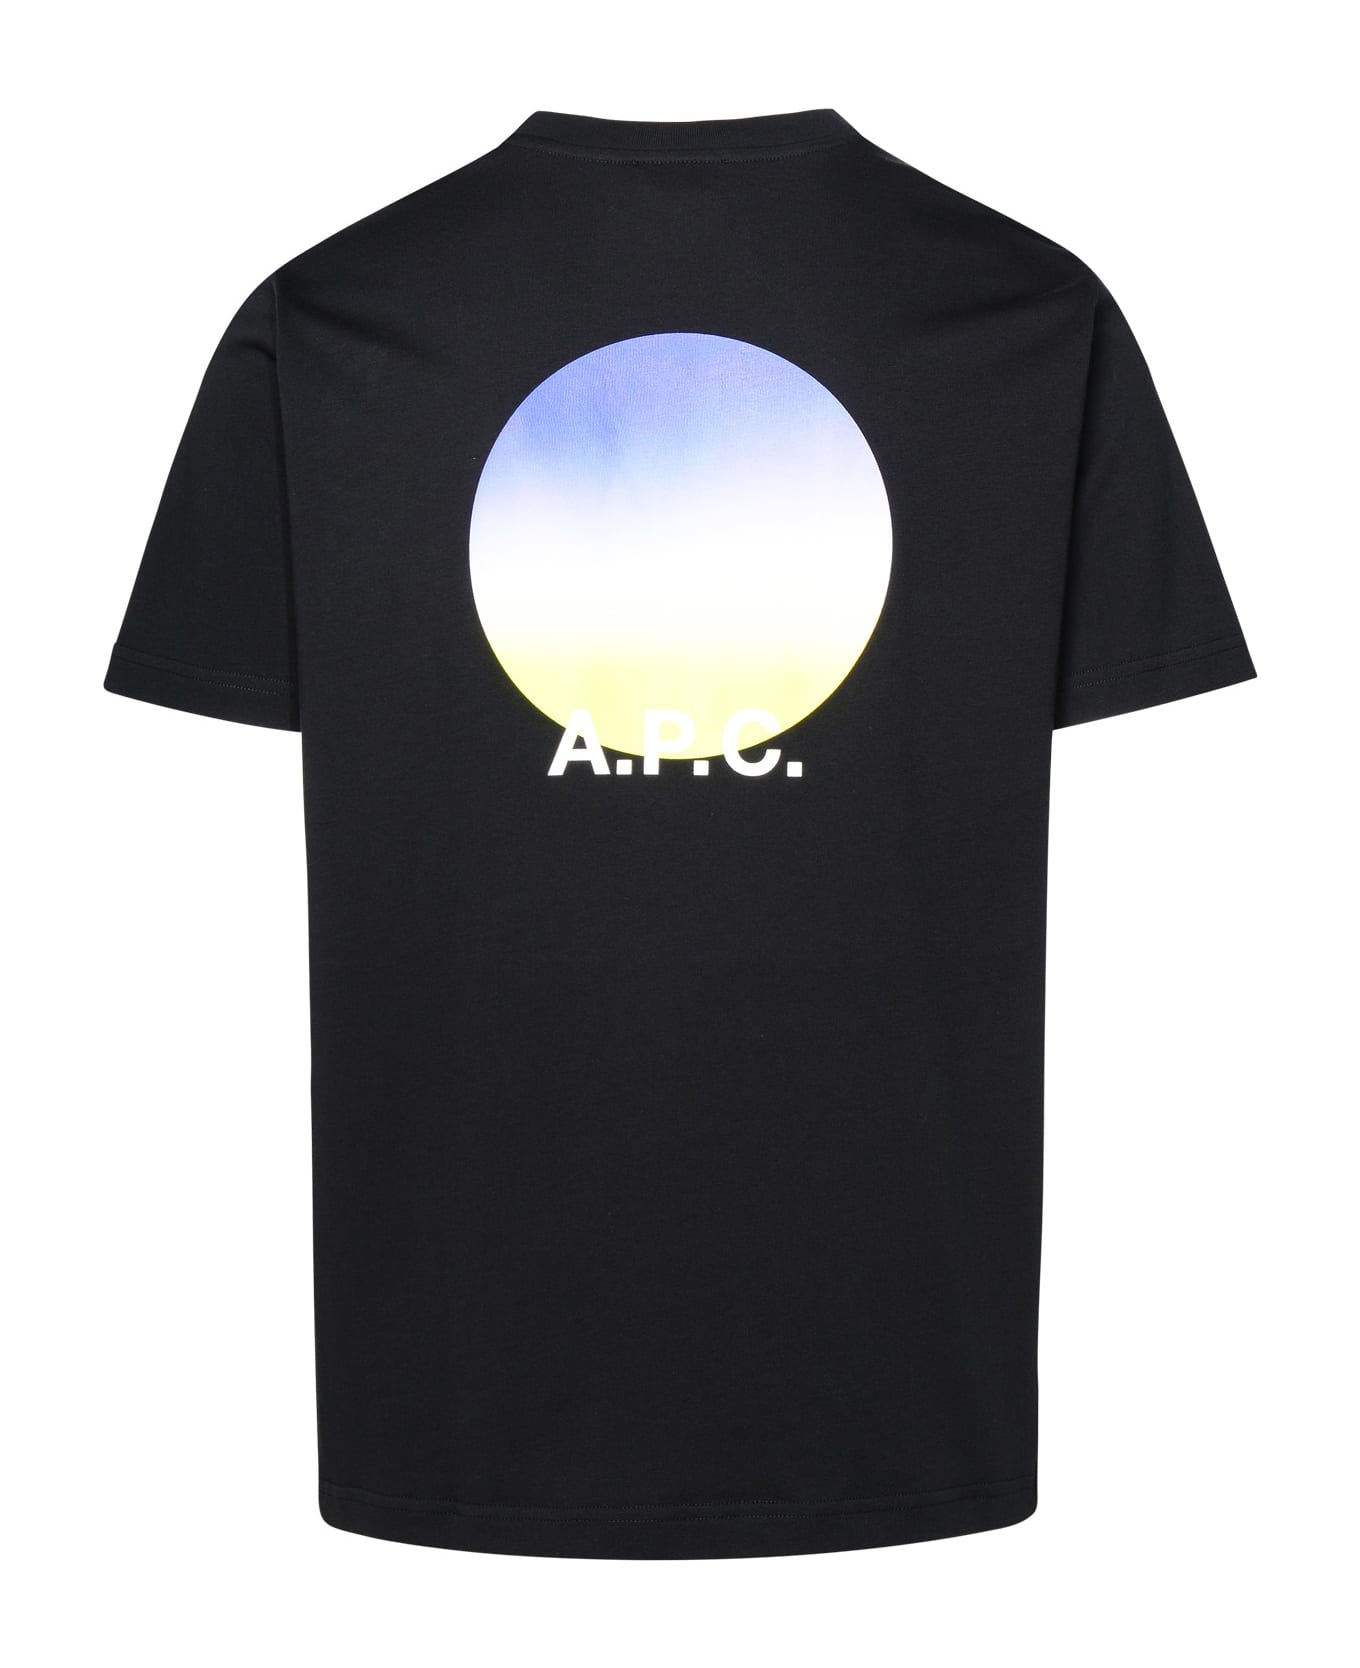 A.P.C. Black Cotton T-shirt - BLACK